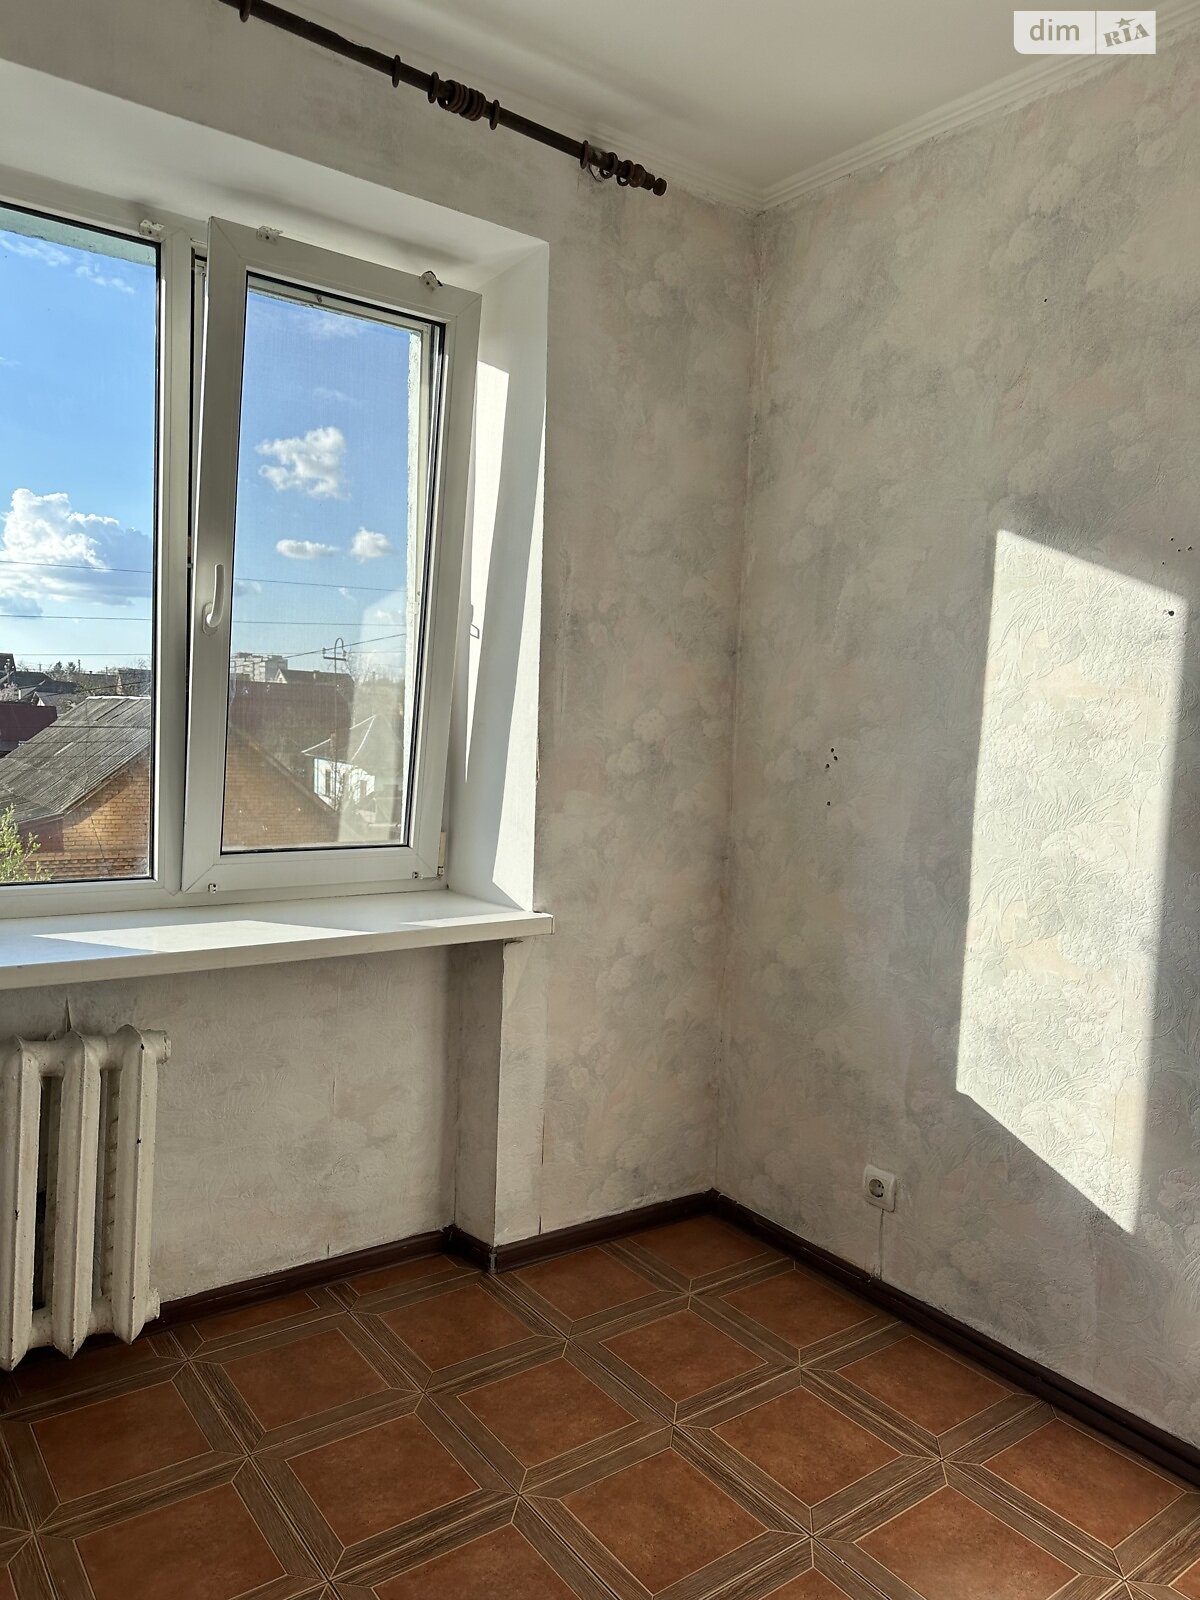 Продажа однокомнатной квартиры в Хмельницком, на ул. Пьяскорского, район Гречаны ближние фото 1